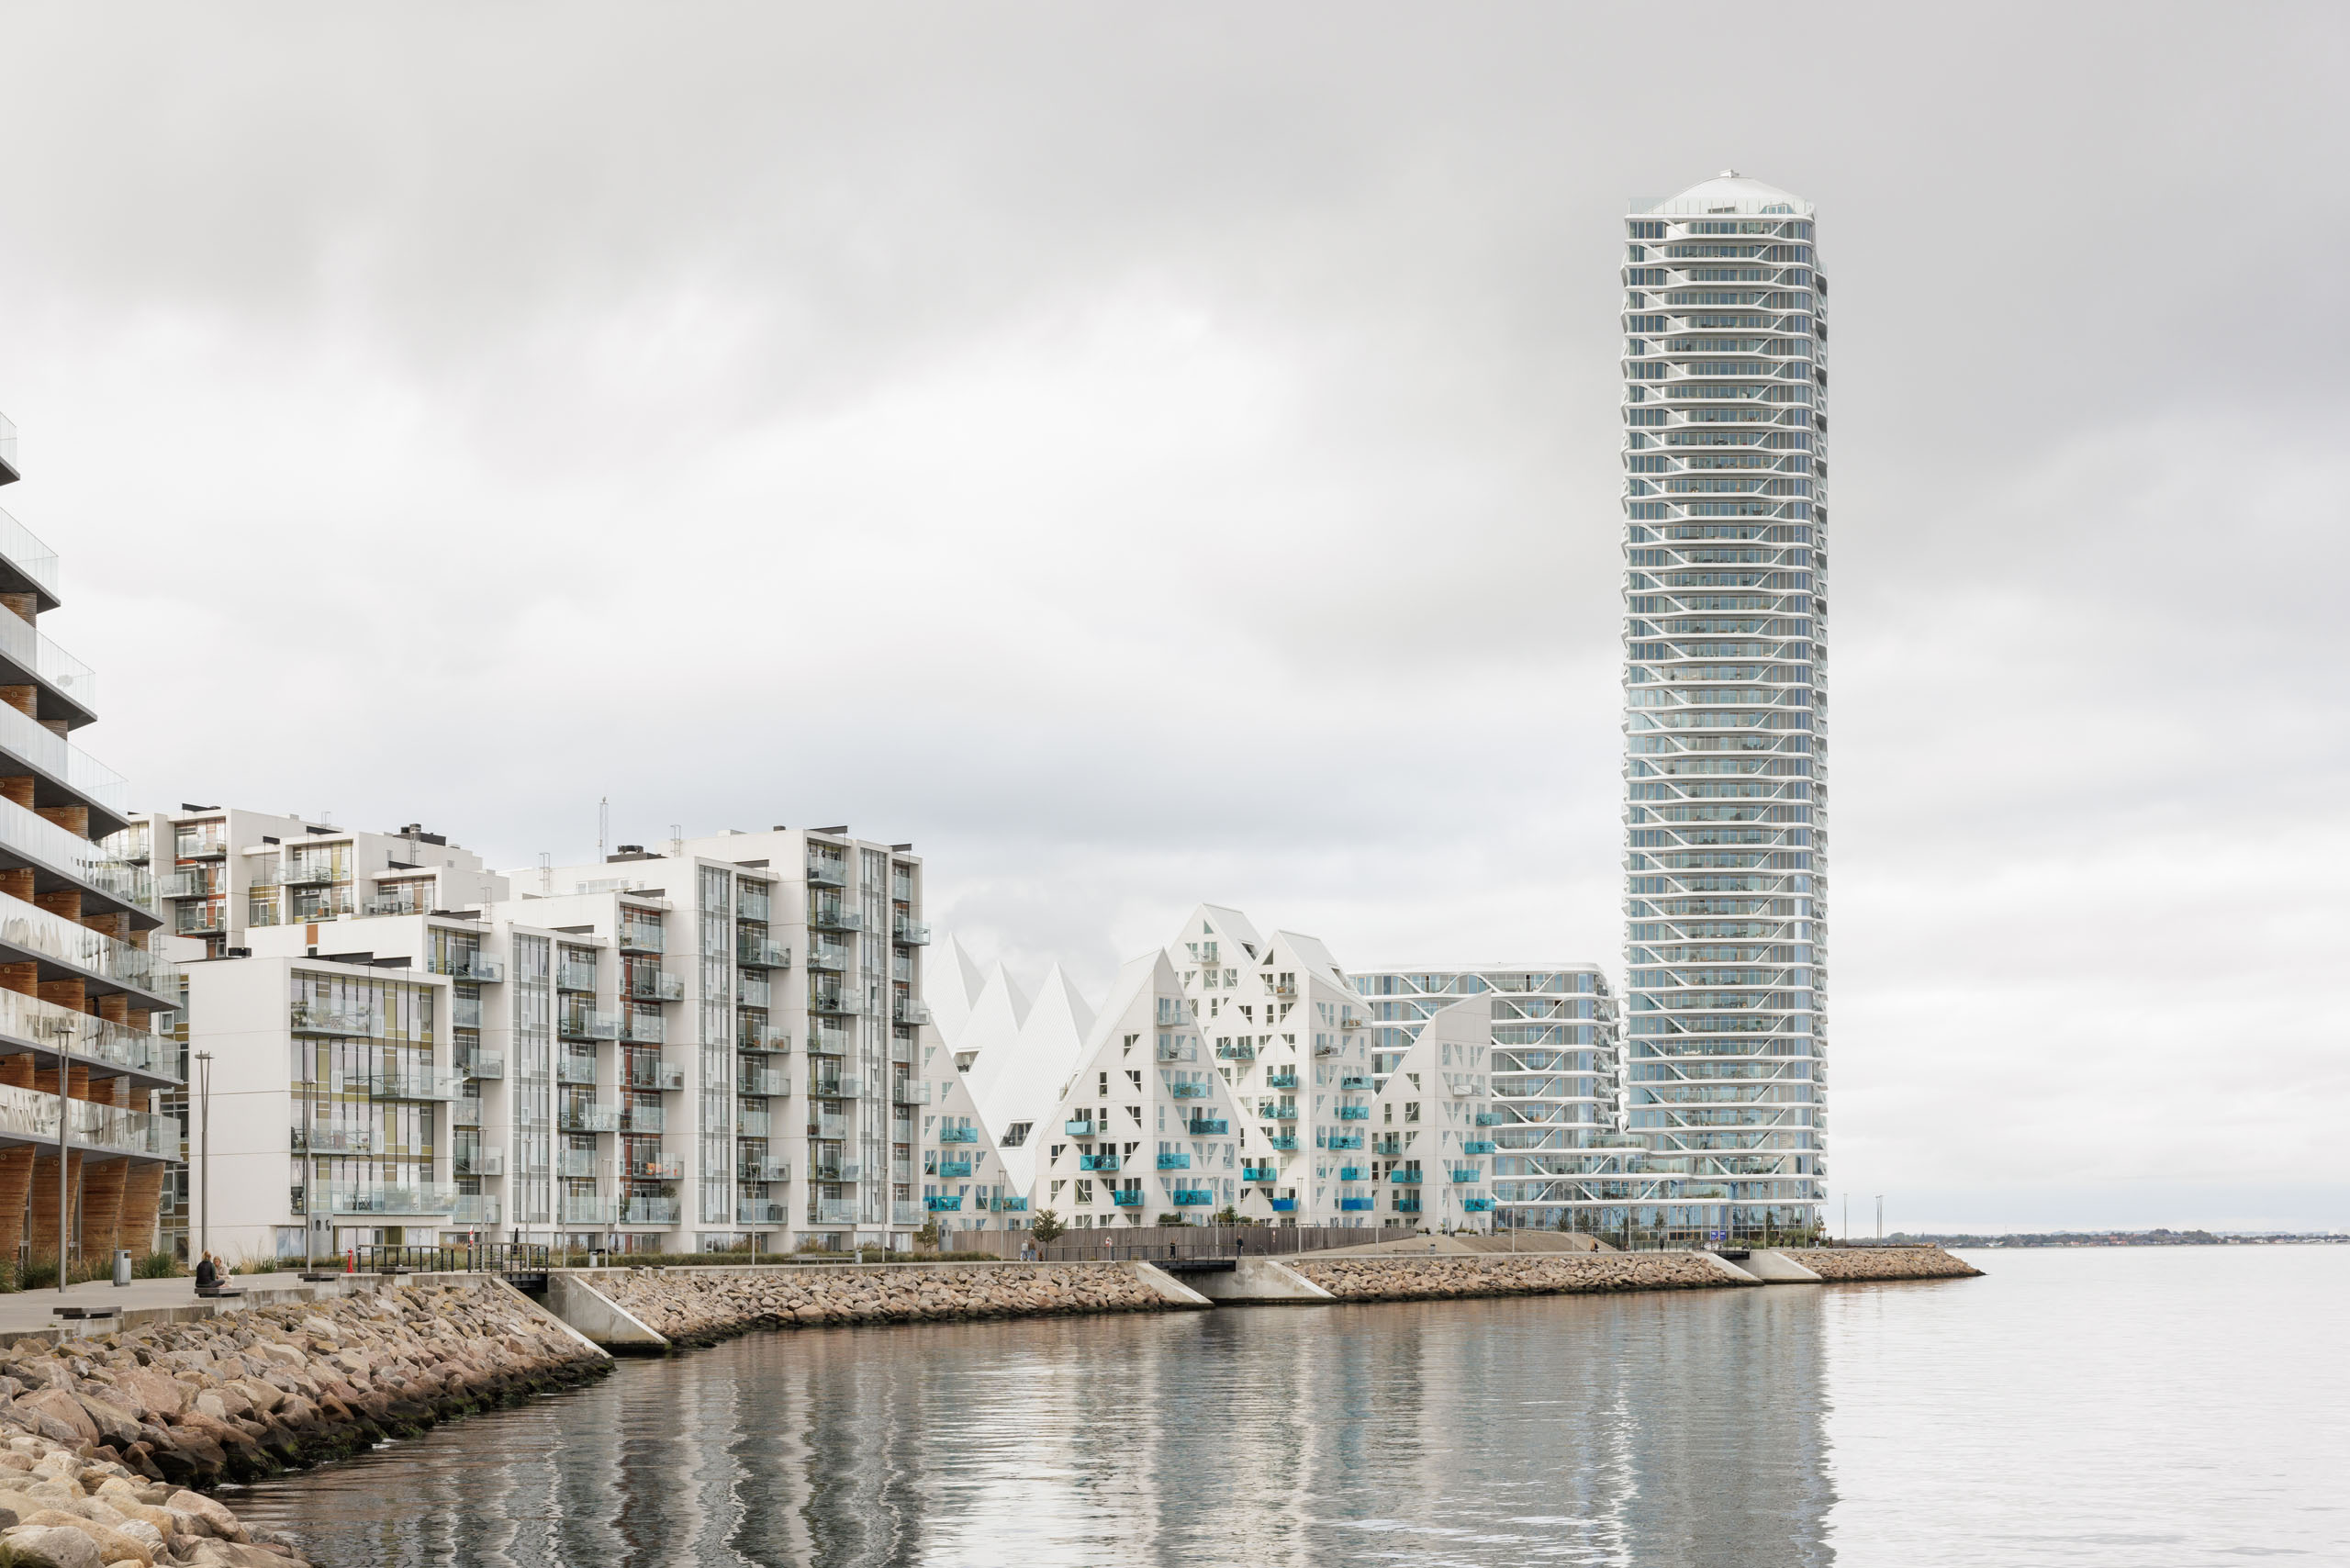 Philippe Corthout + CEBRA + JDS Architects + Louis Paillard + SeARCH